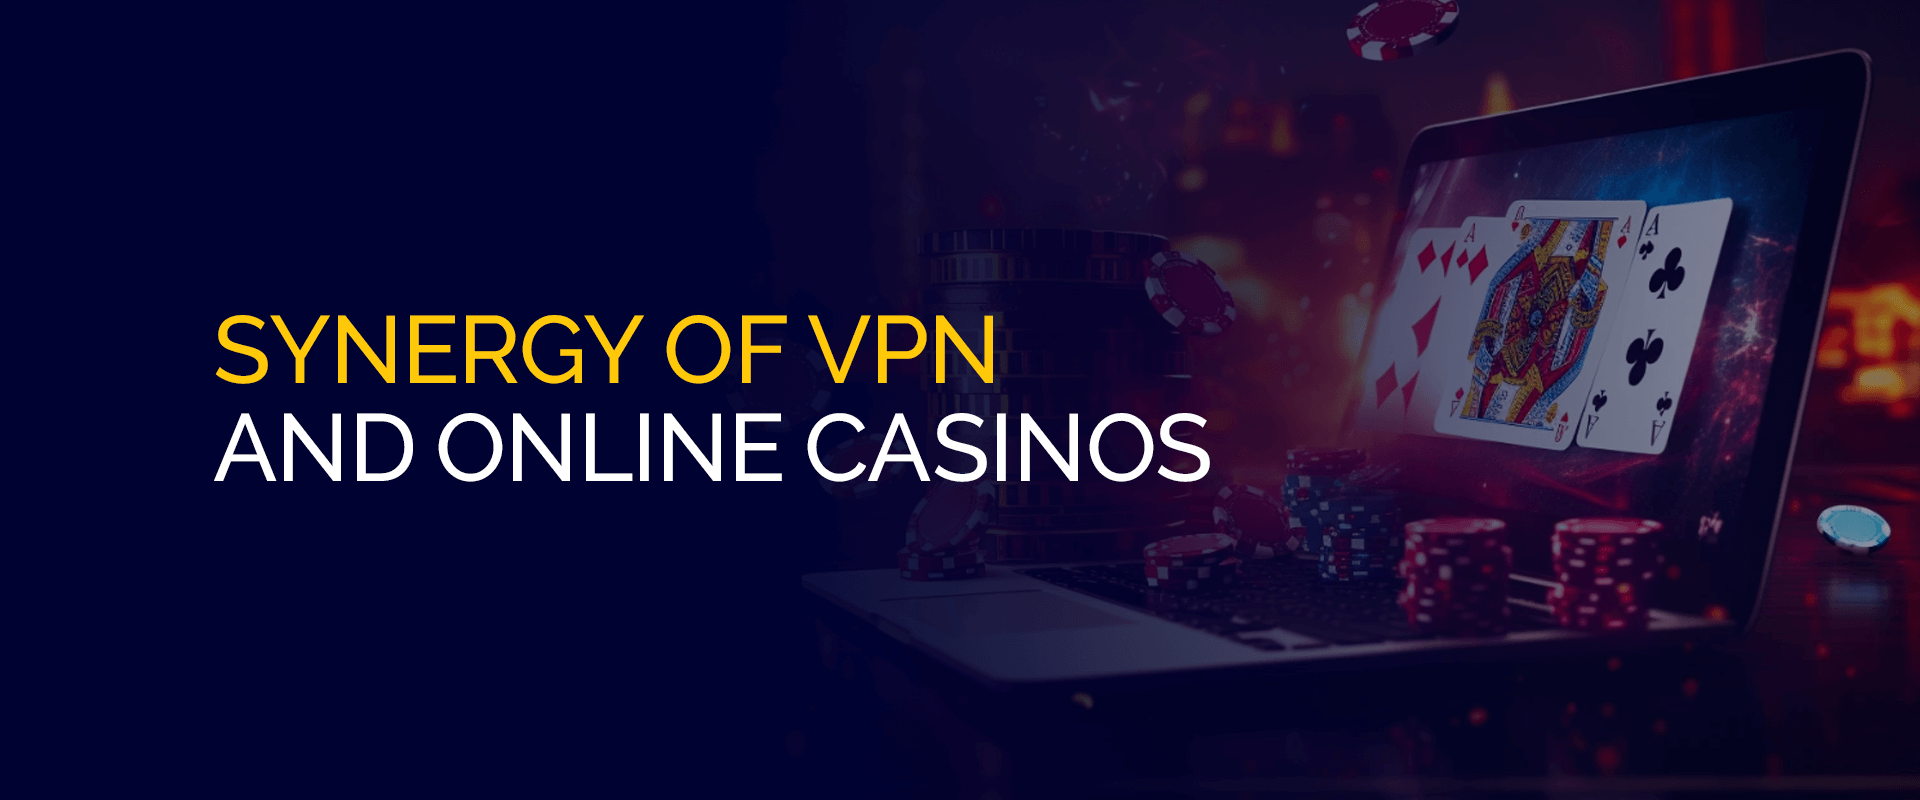 VPN とオンライン カジノの相乗効果